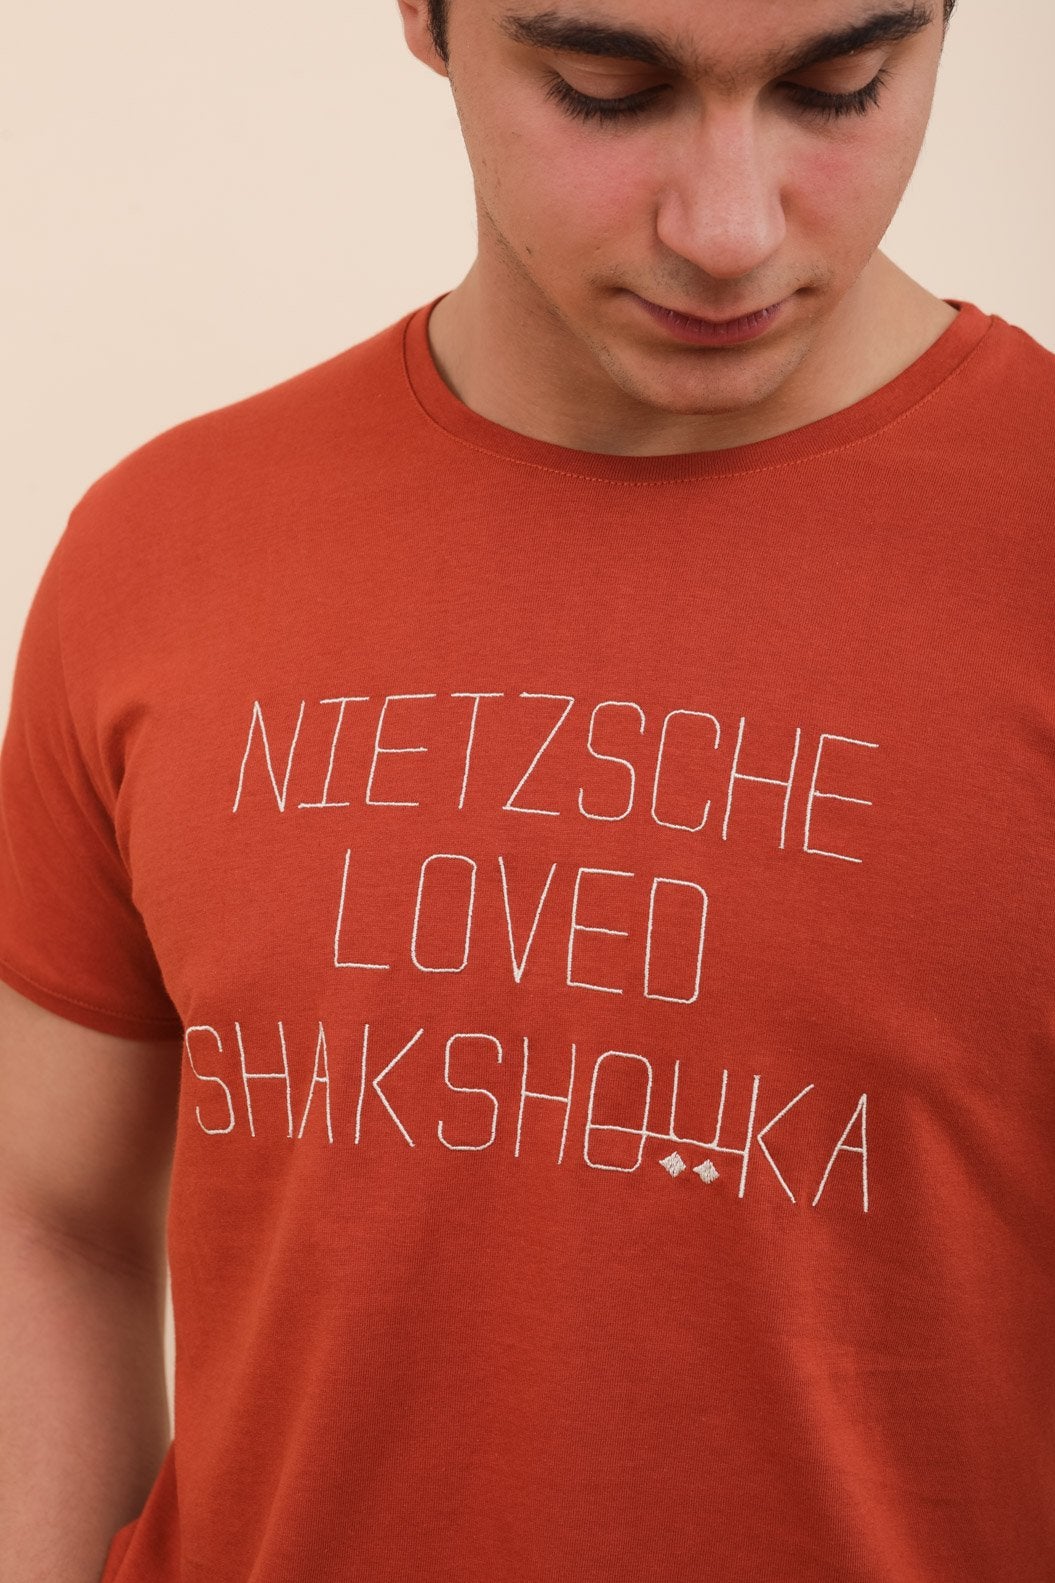 Lyoum T Shirt Nietzsche loved shakshouka